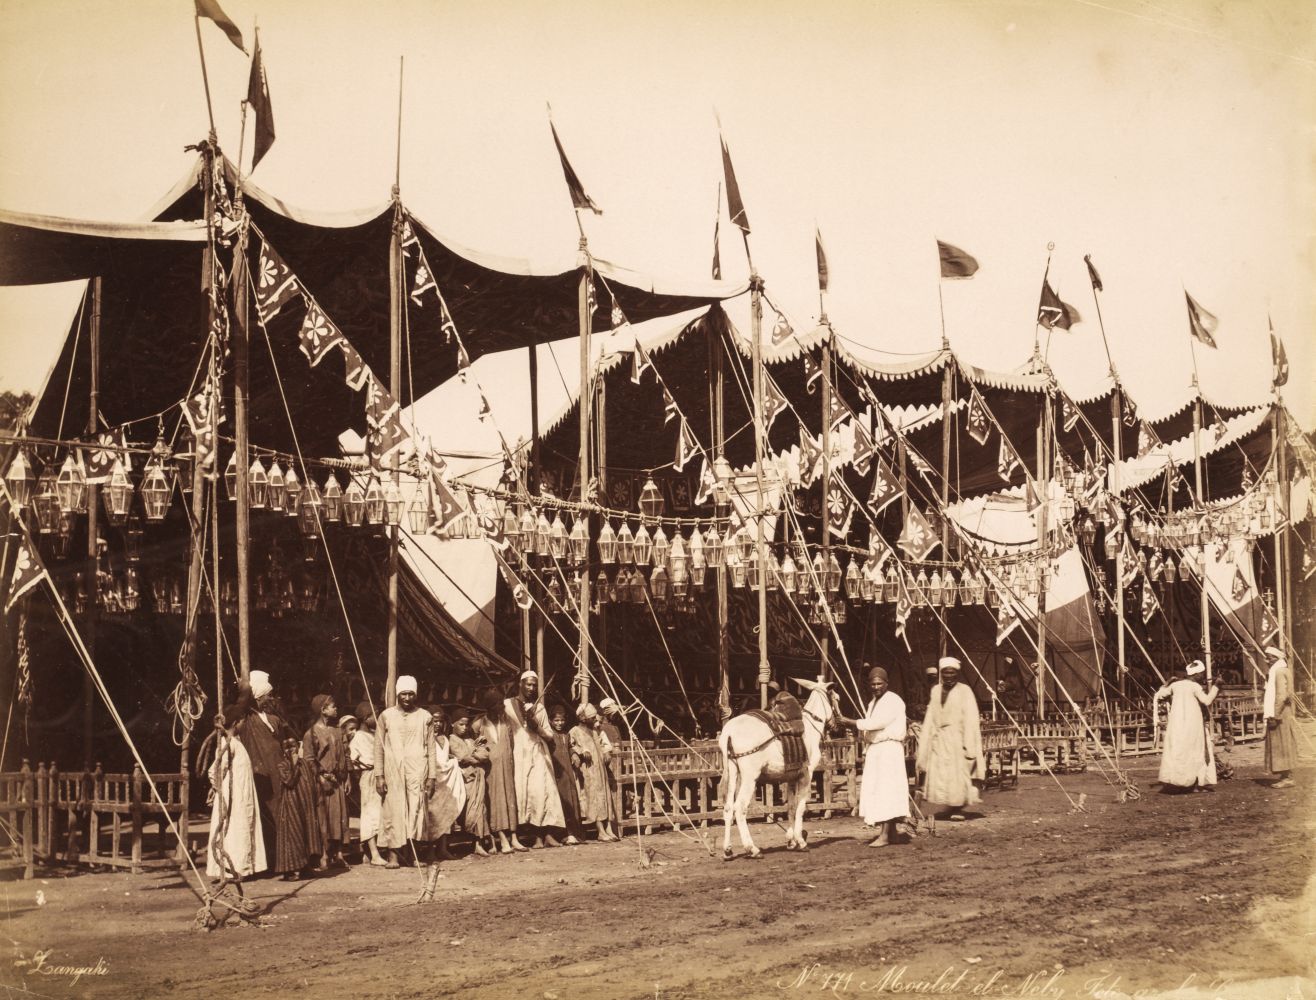 Egypt. An album containing 90 mounted photographs by Arnoux, Zangaki, Bonfils et al., c. 1890s